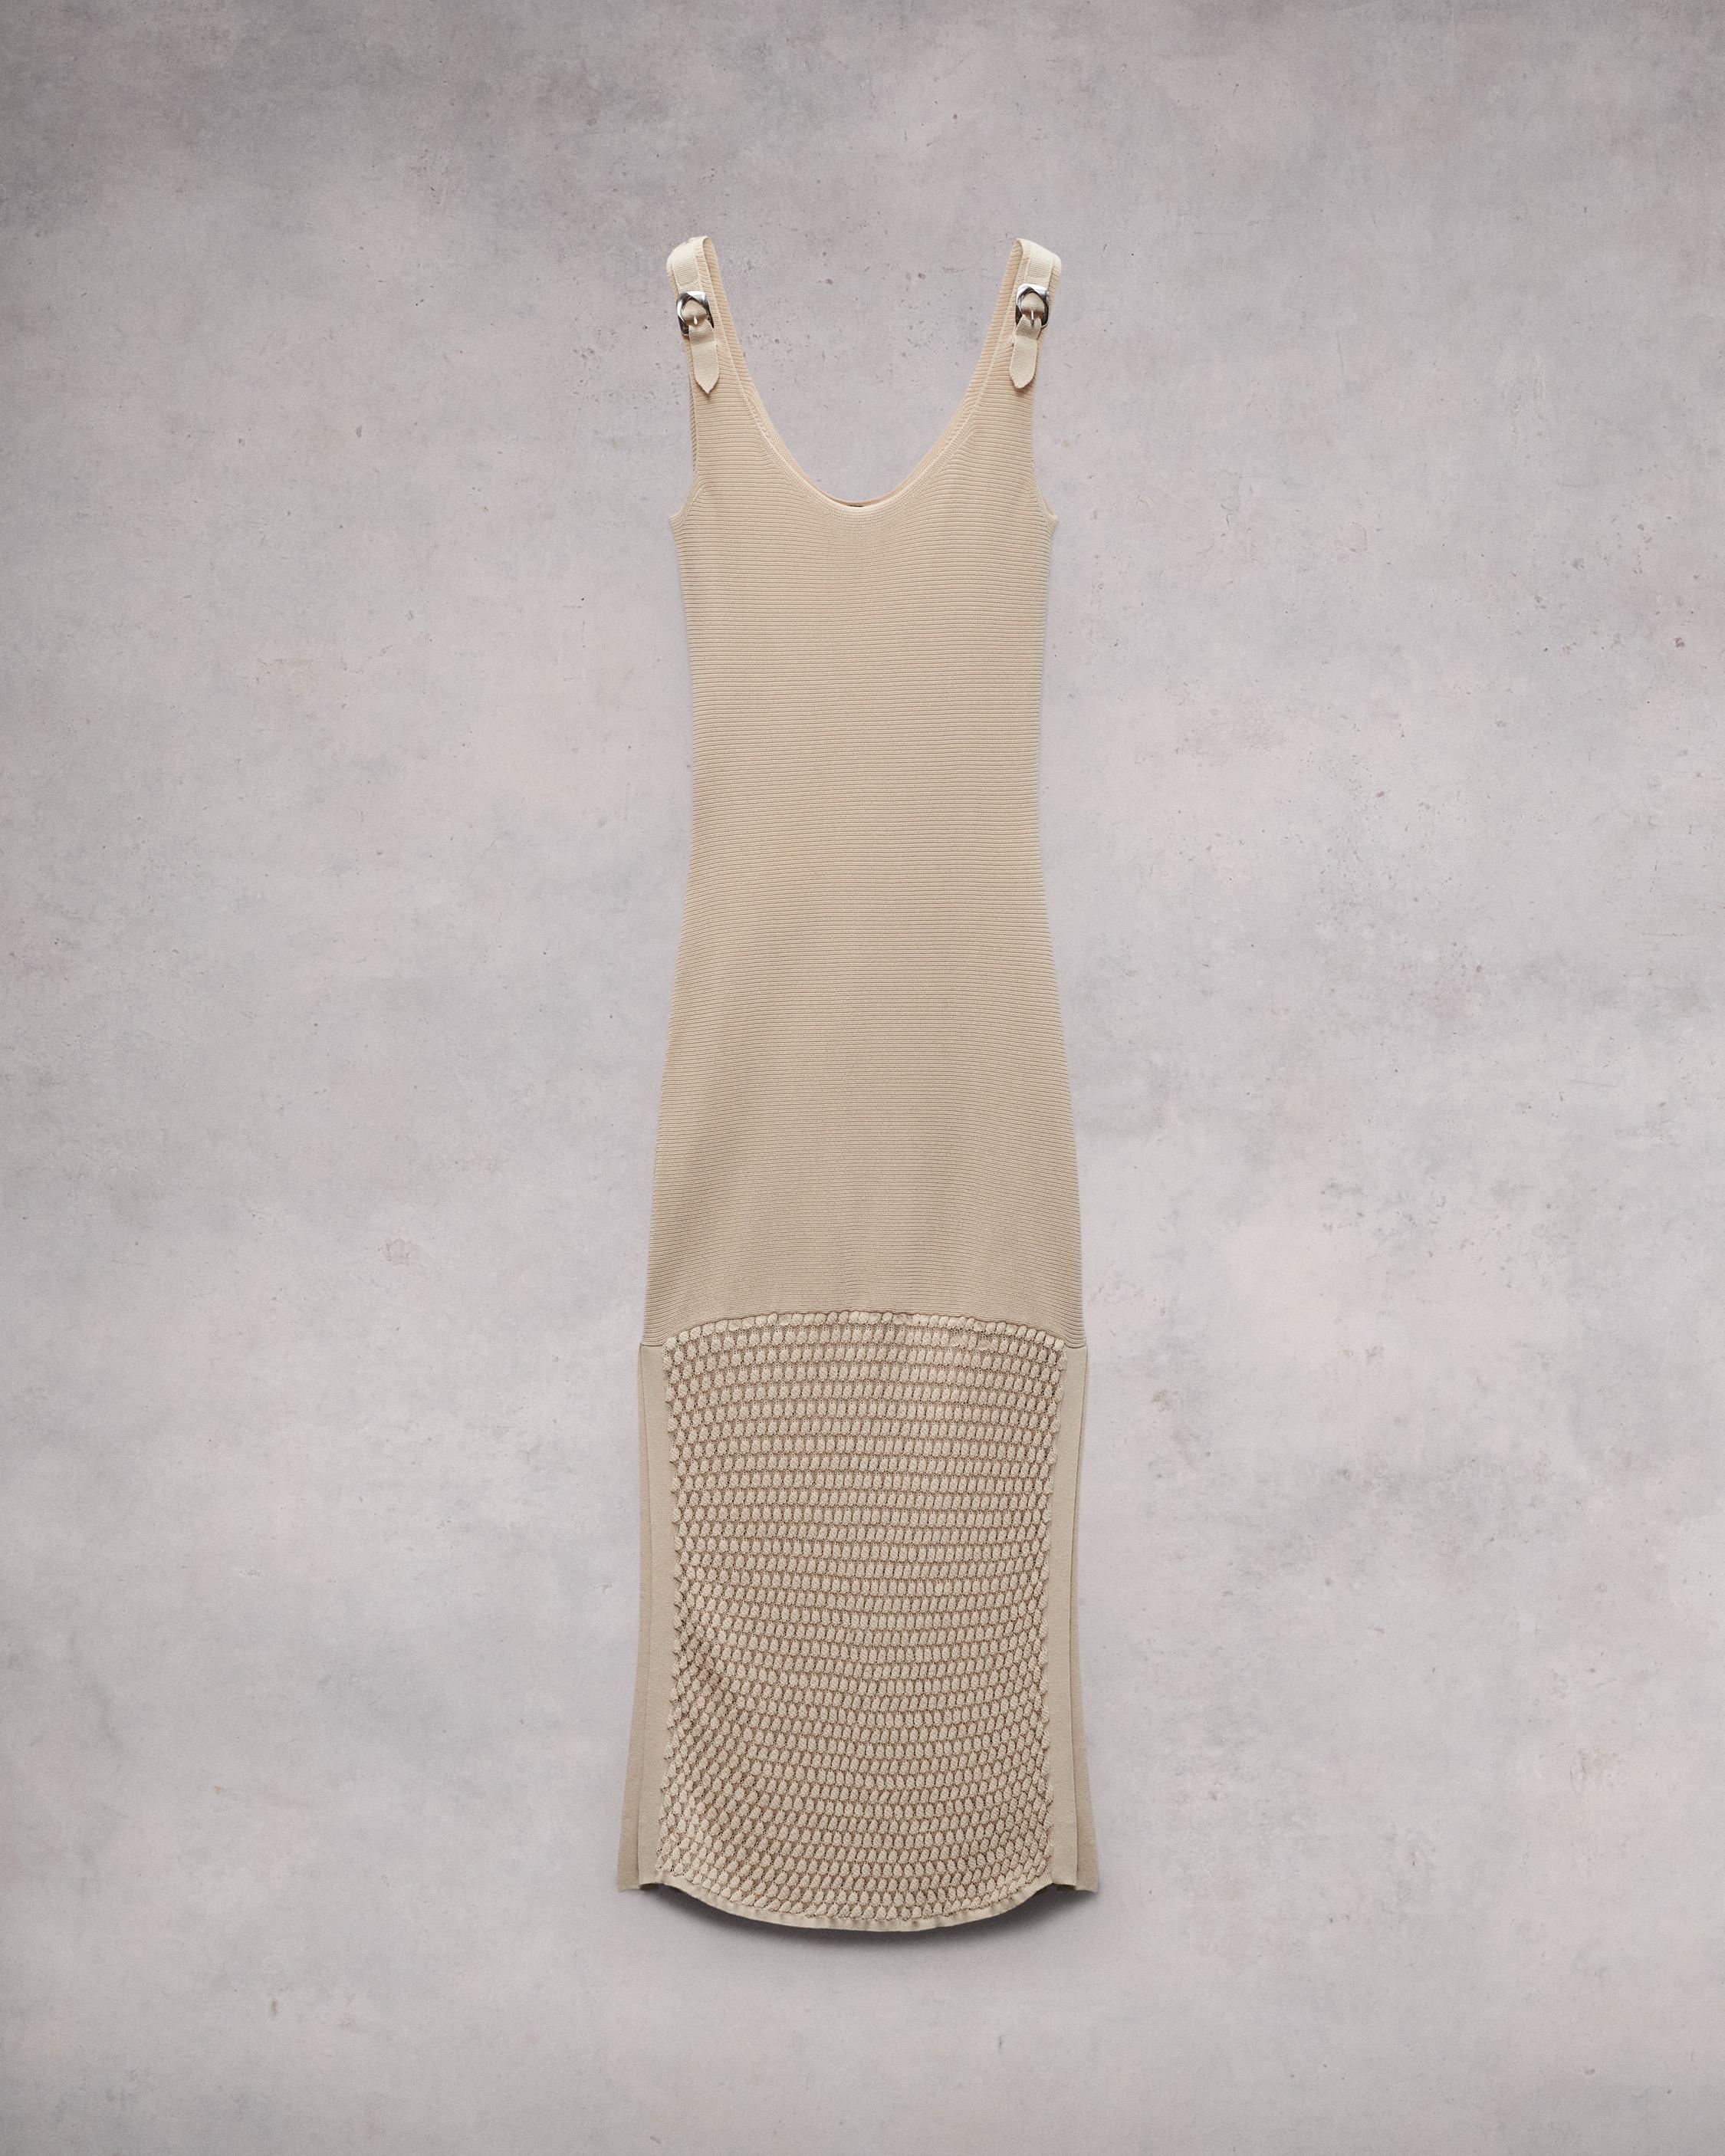 Georgia Cotton Nylon Dress
Midi - 1